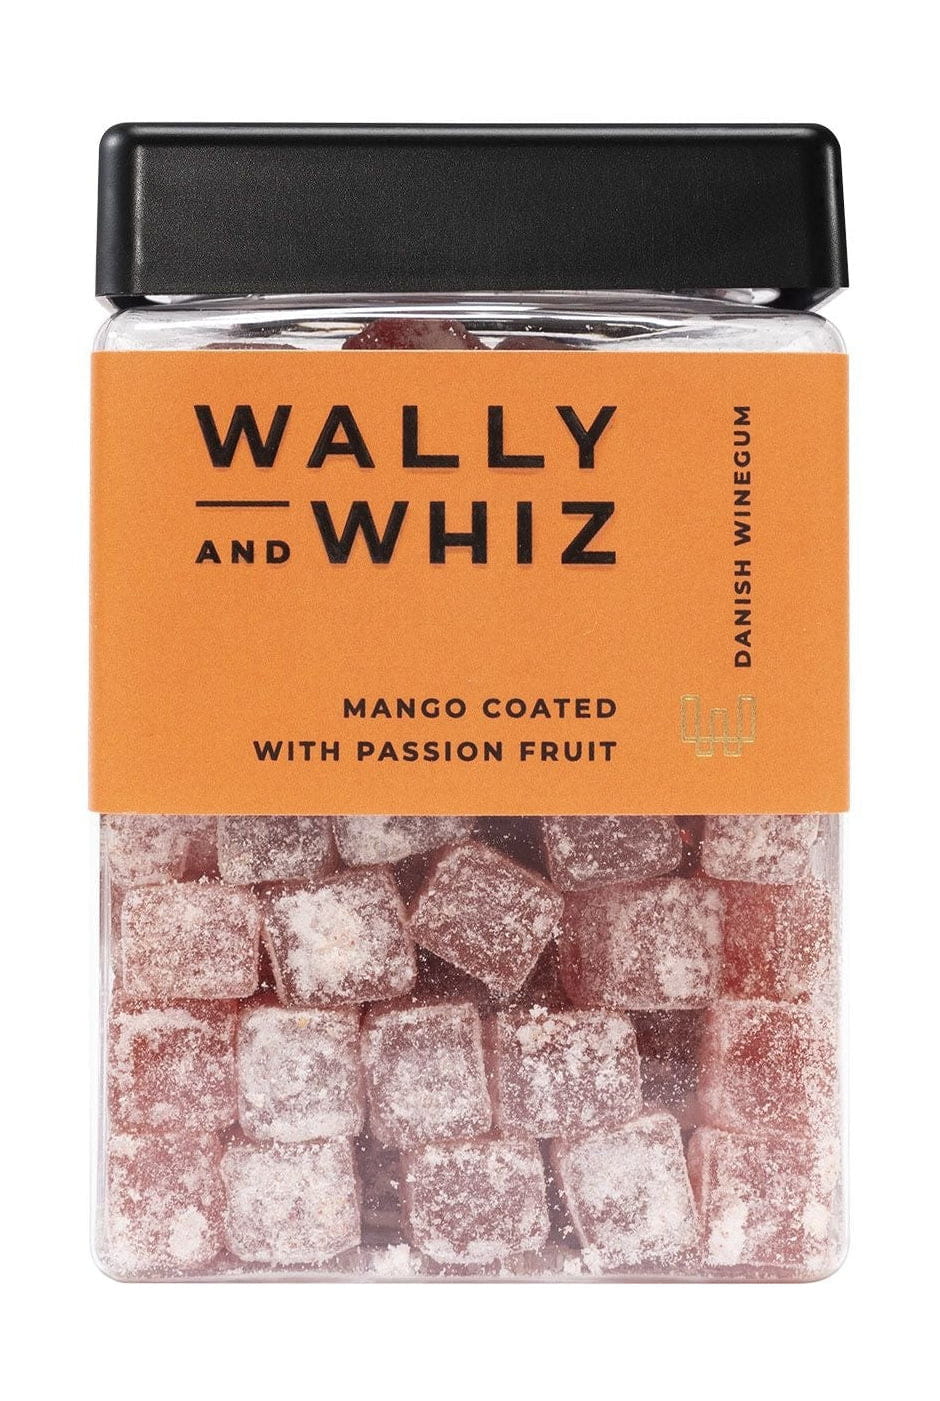 Guma gumowa Wally i Whiz Wine, guma owocowa mango z namiętnością, 240G